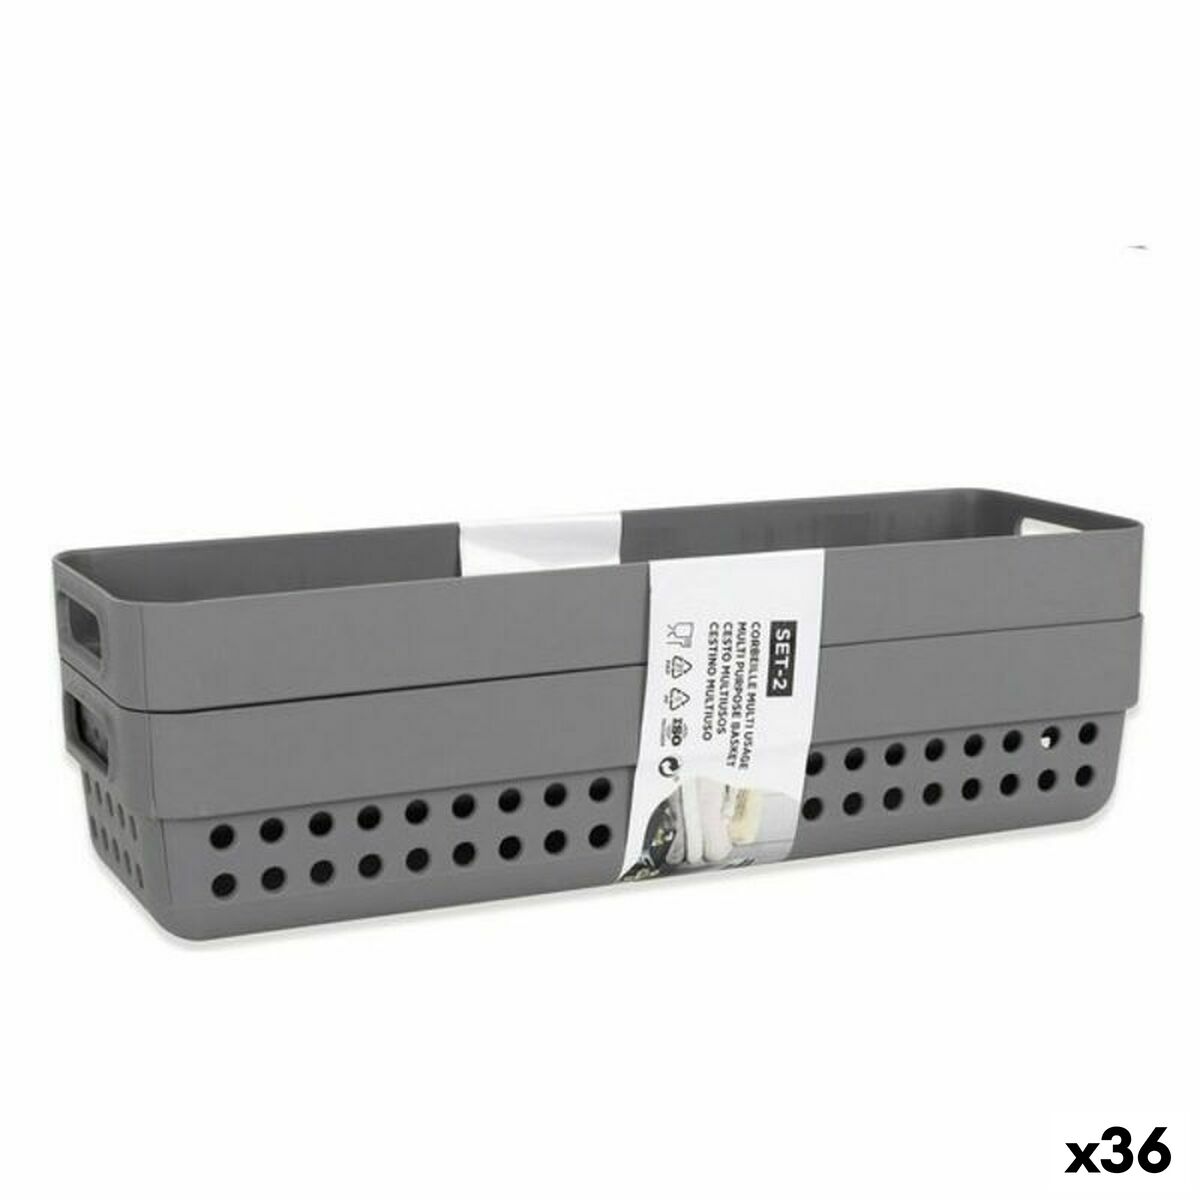 Кутия за Съхранение с Капак Bella Антрацит 28 x 17,9 x 11,2 cm (12 броя) (28 x 18 x 11 cm)